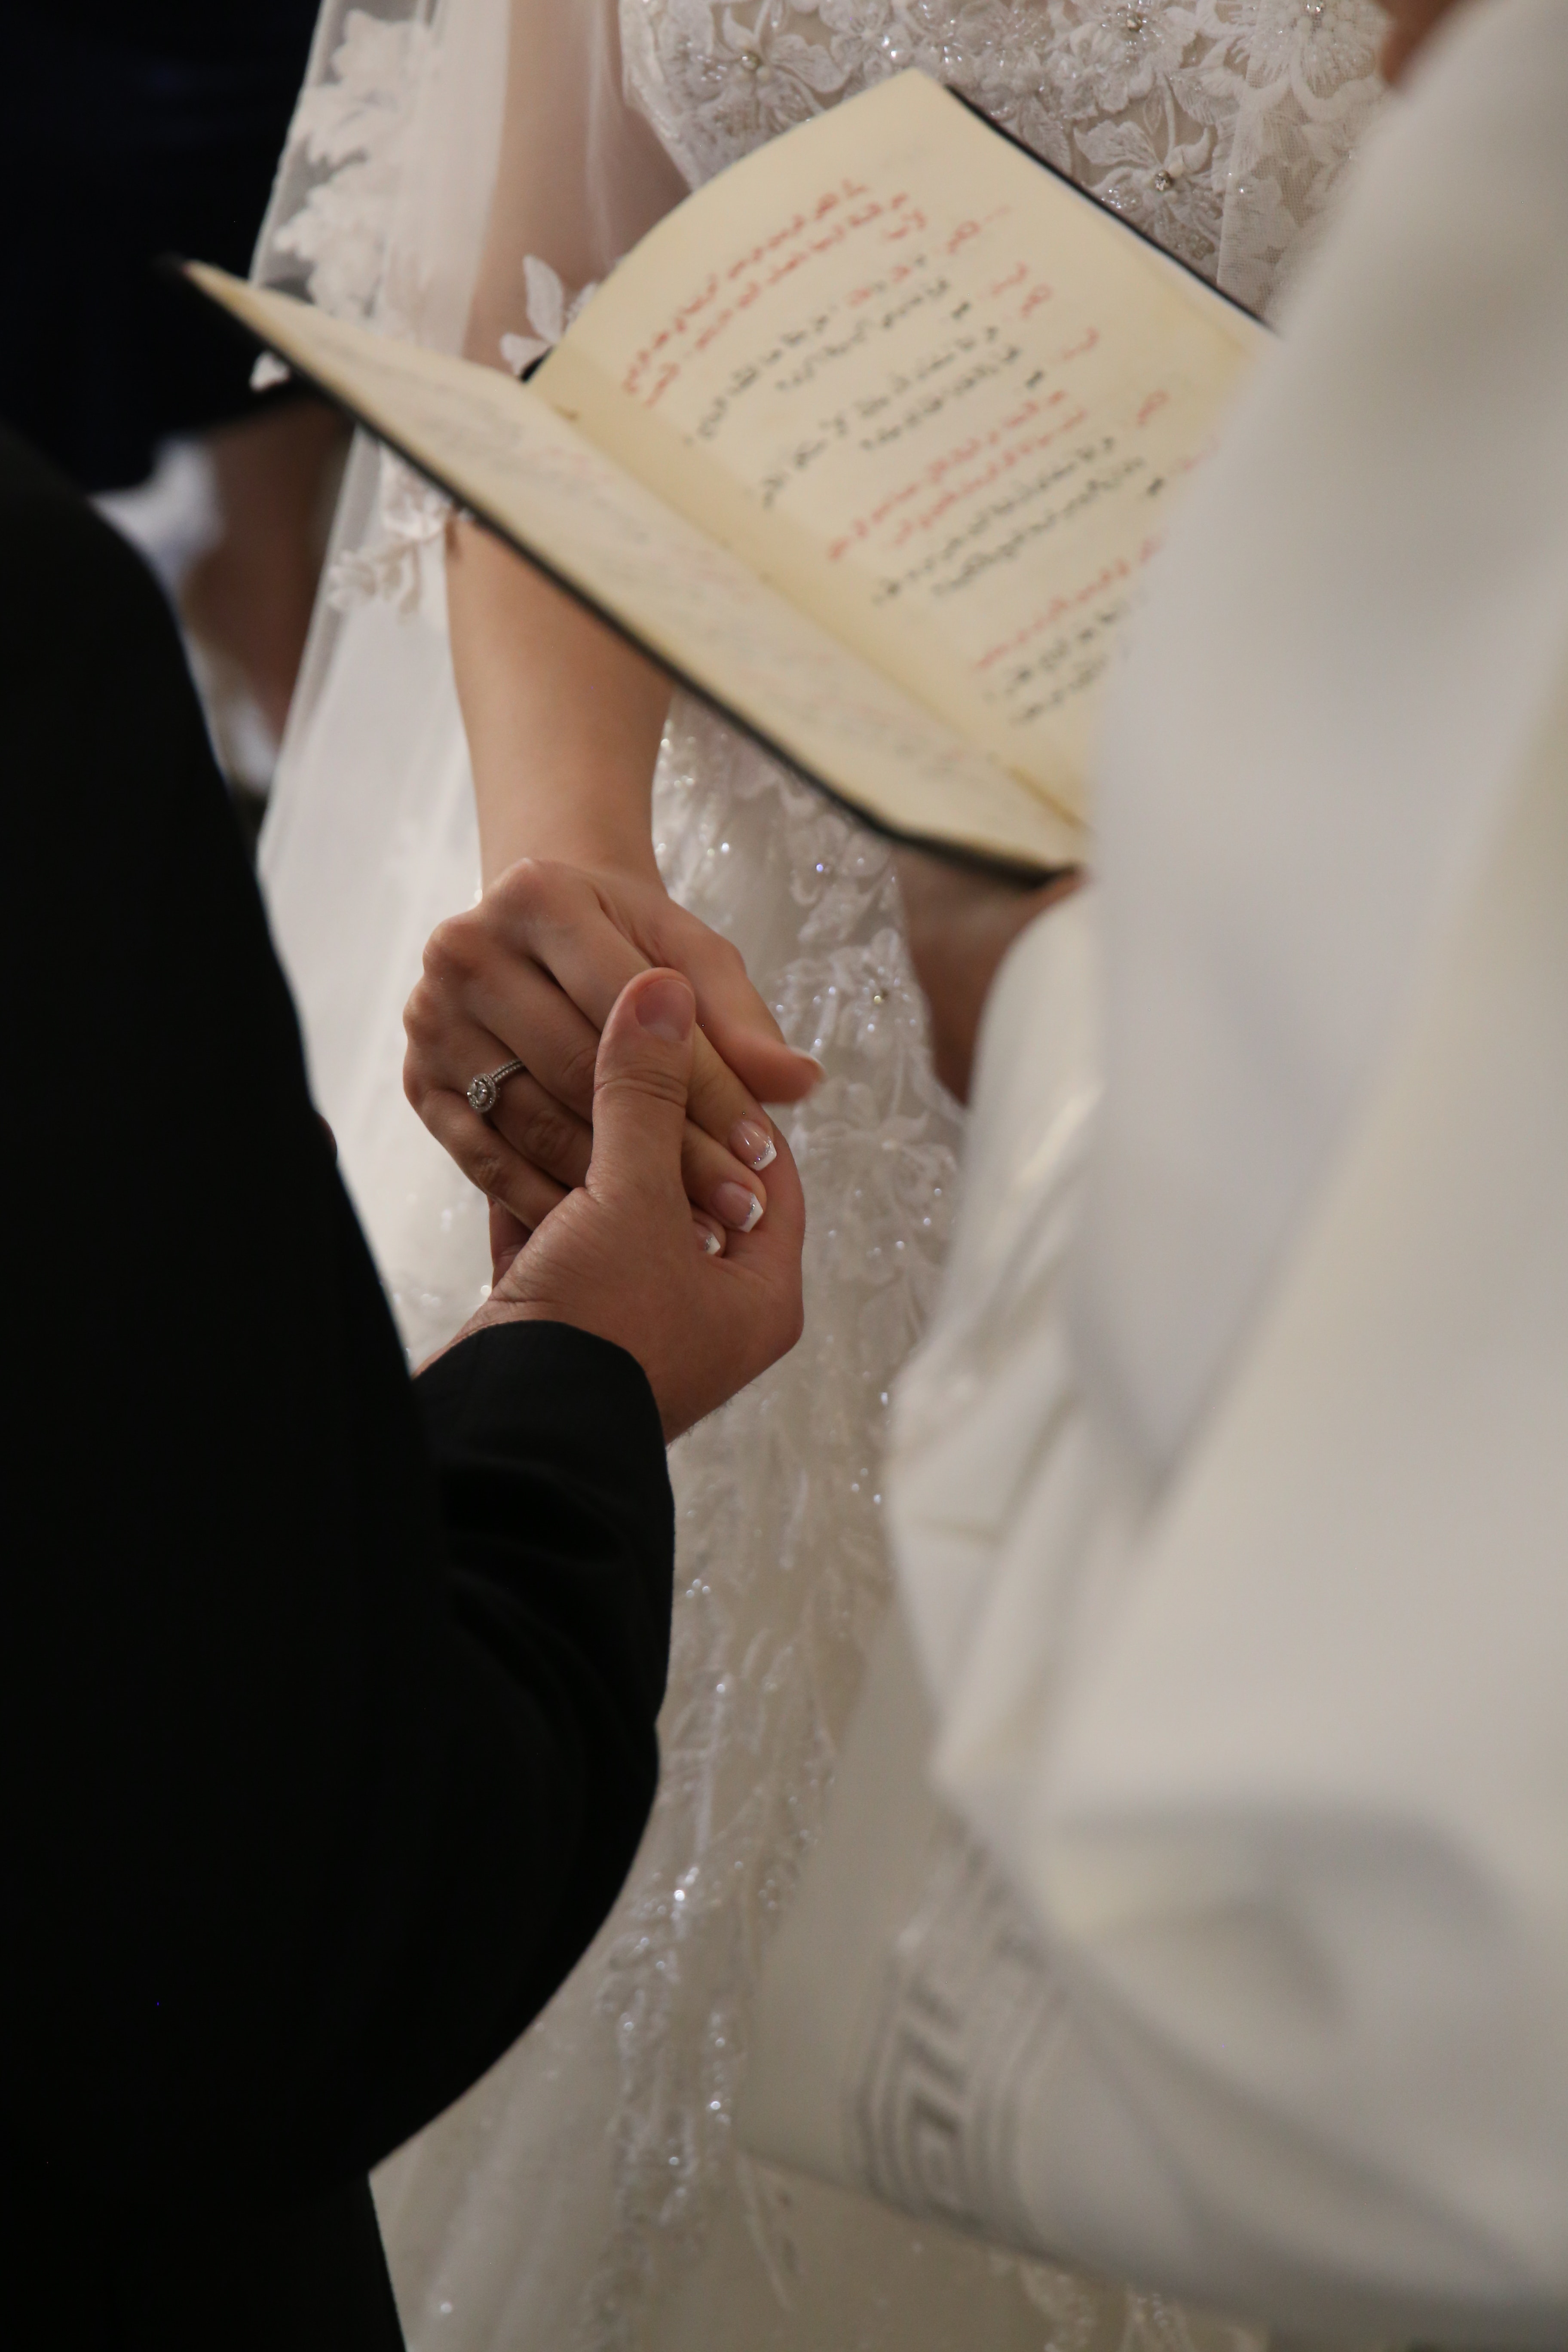 Recién casados cogidos de la mano en la ceremonia de boda | Fuente: Pexels